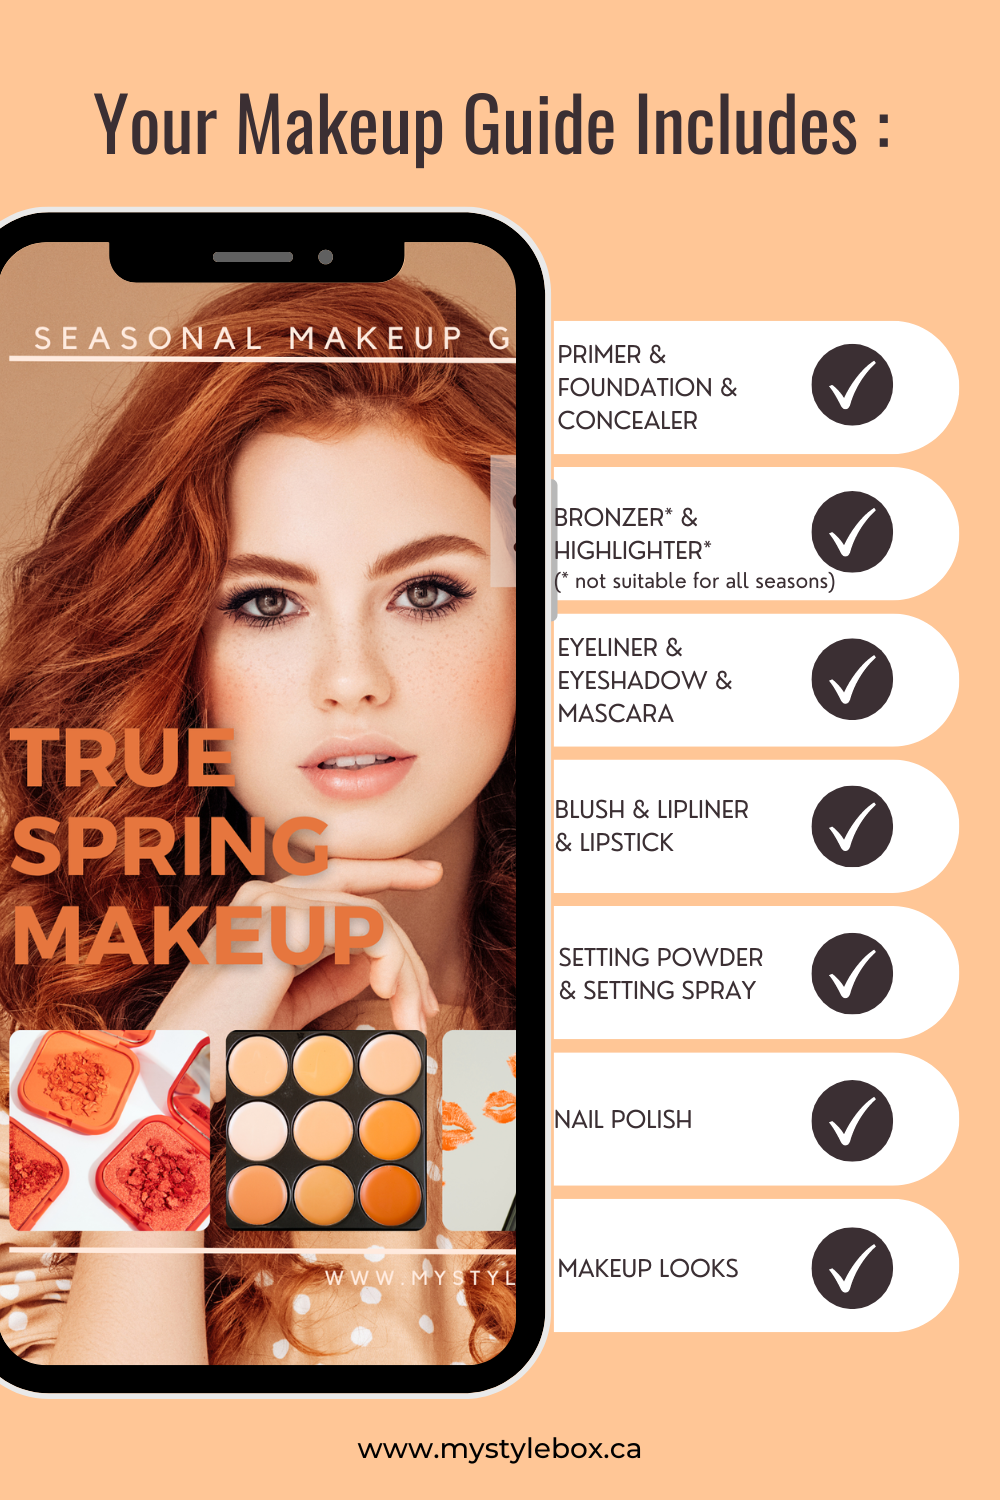 True (Warm) Spring Color Season Makeup Guide